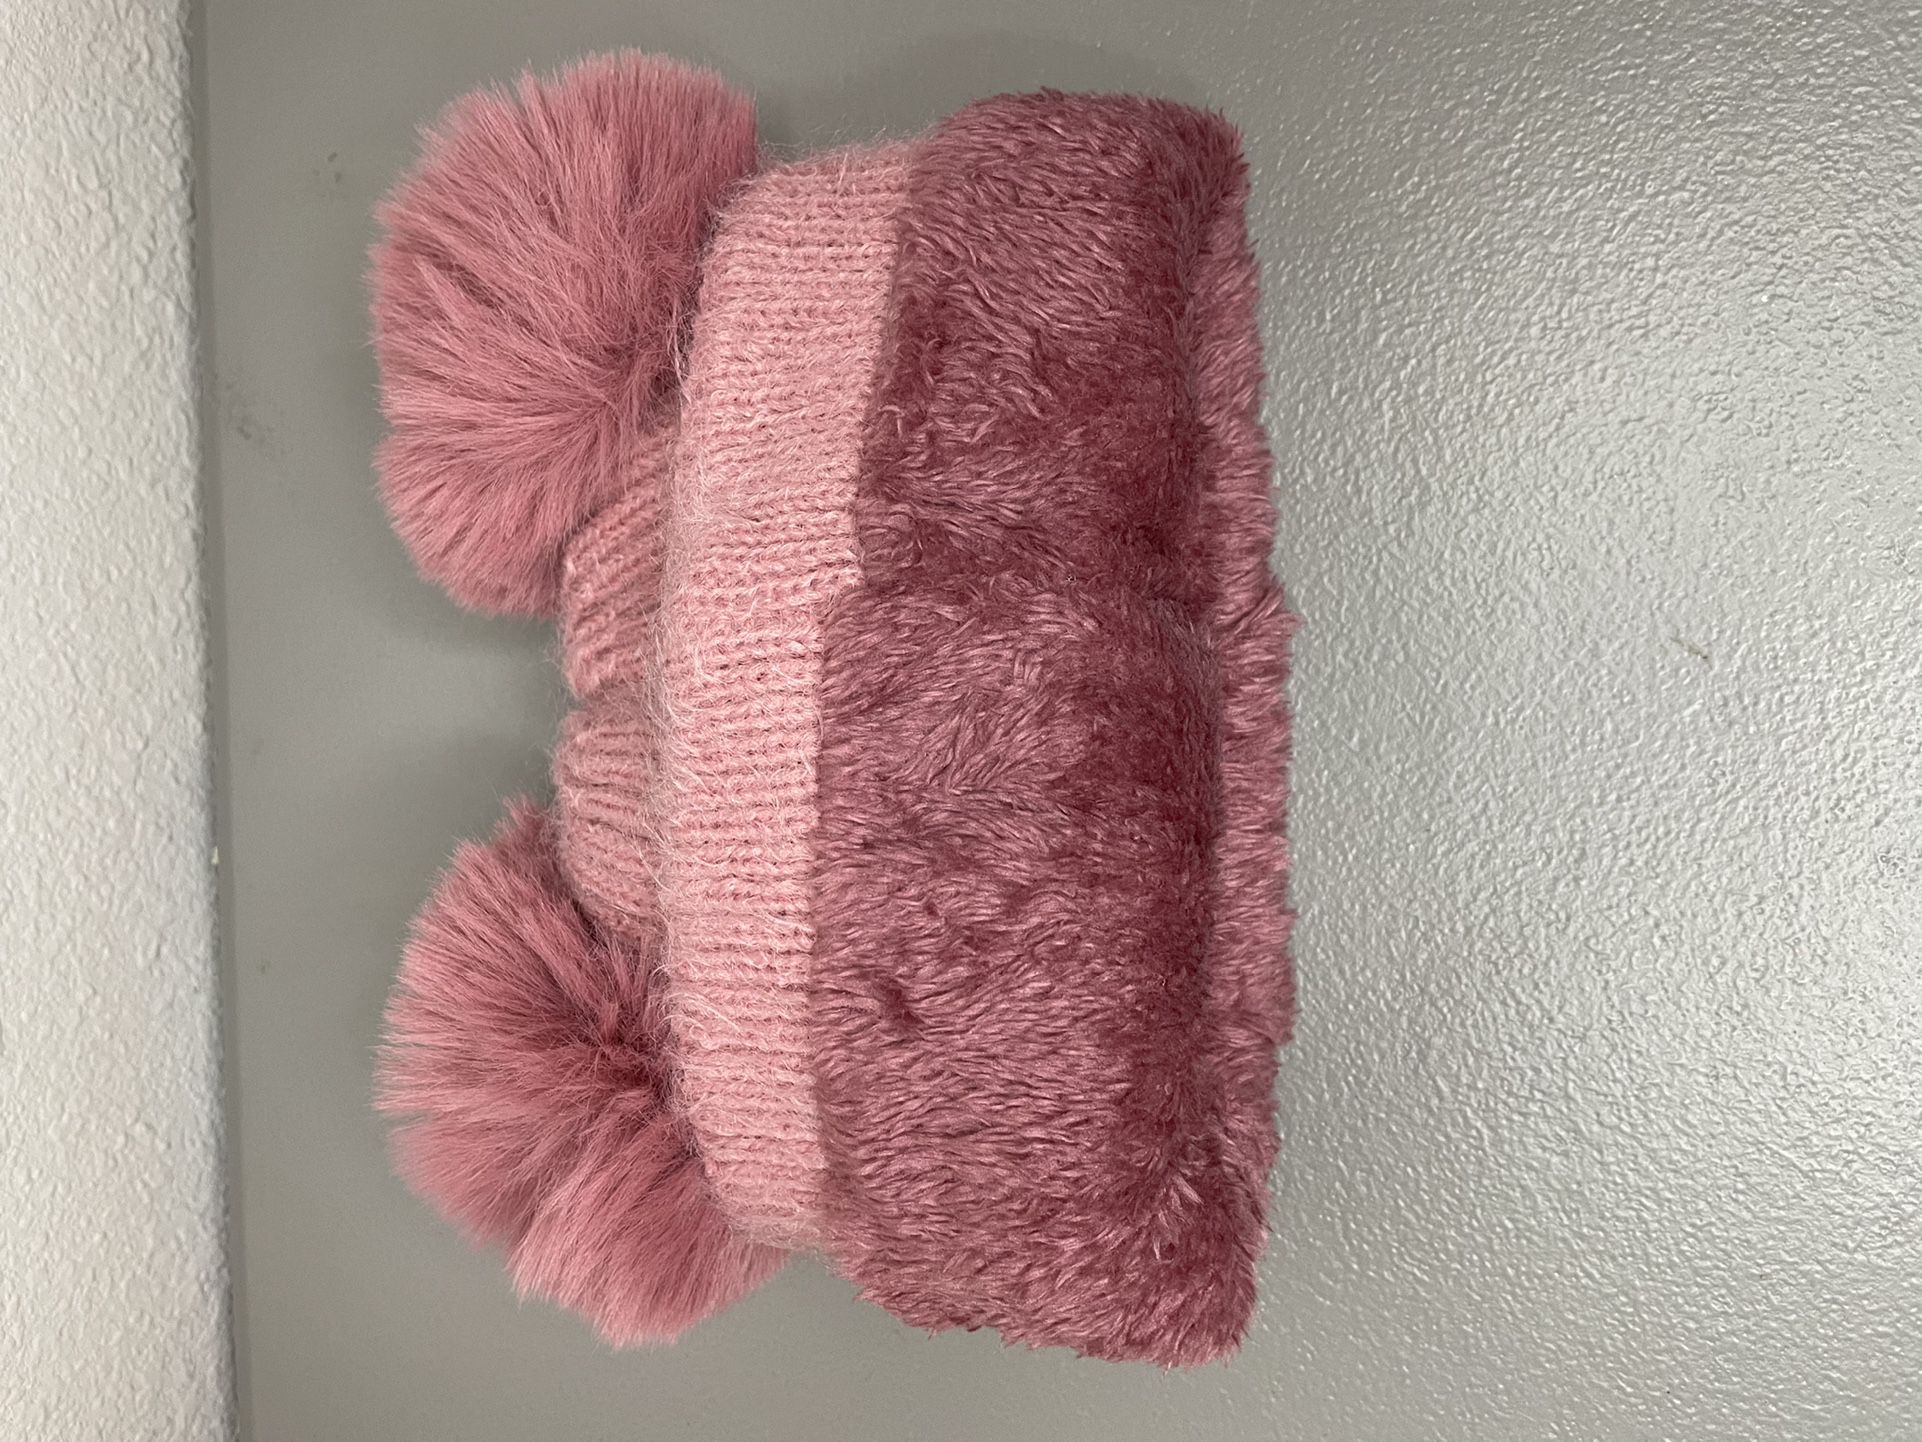 Pink Beanie hat With Pom Pom